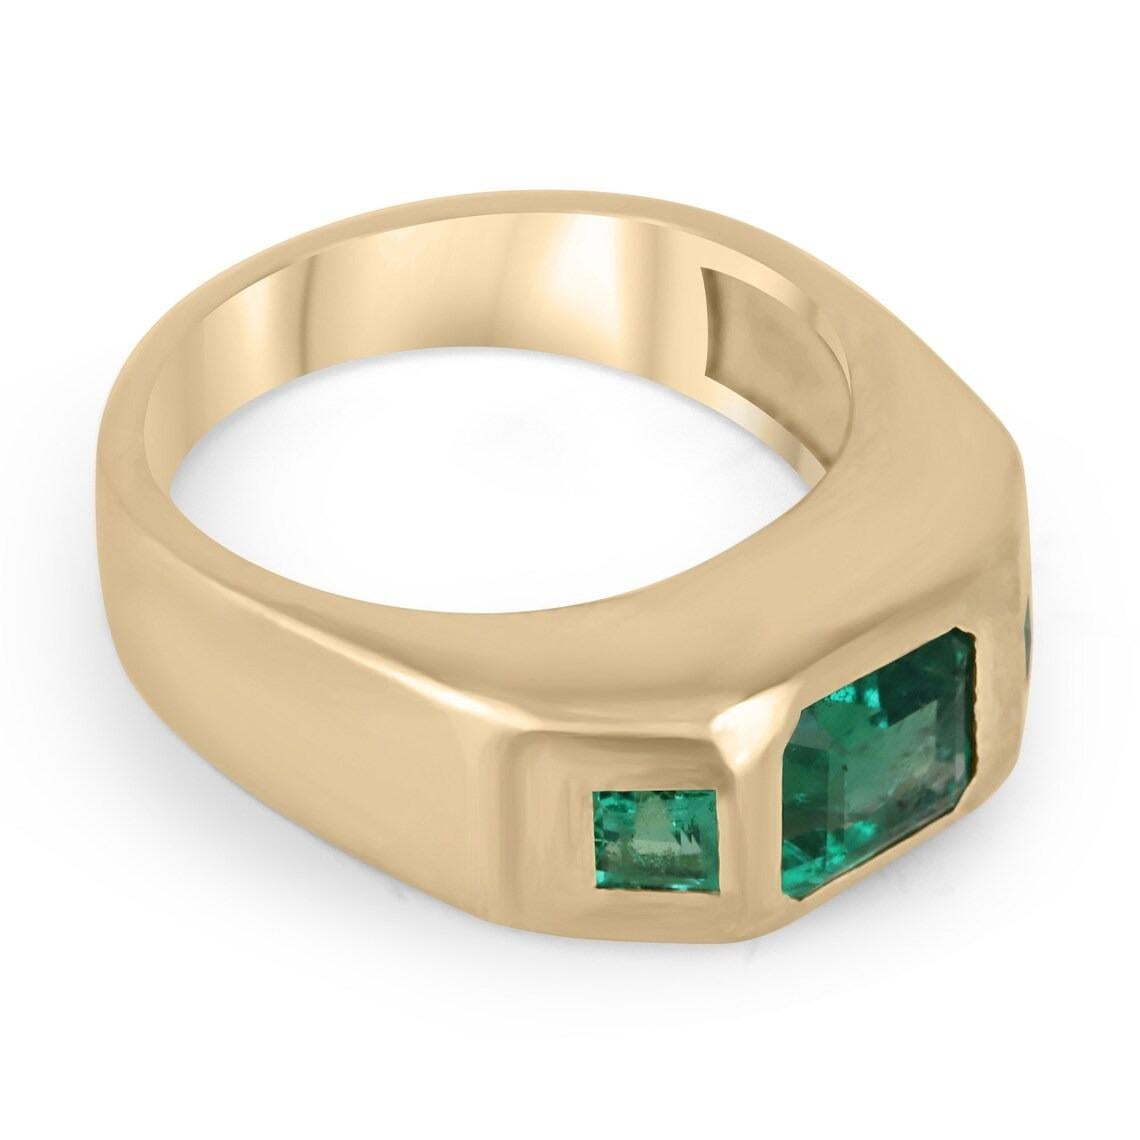 Dieser wunderschöne Ring mit drei Steinen besteht aus einem Smaragd im Asscher-Schliff in der Mitte und zwei Smaragden im Prinzess-Schliff an den Seiten, die ein atemberaubendes Trio aus grünen Steinen bilden. Die Smaragde sind in eine 14-karätige